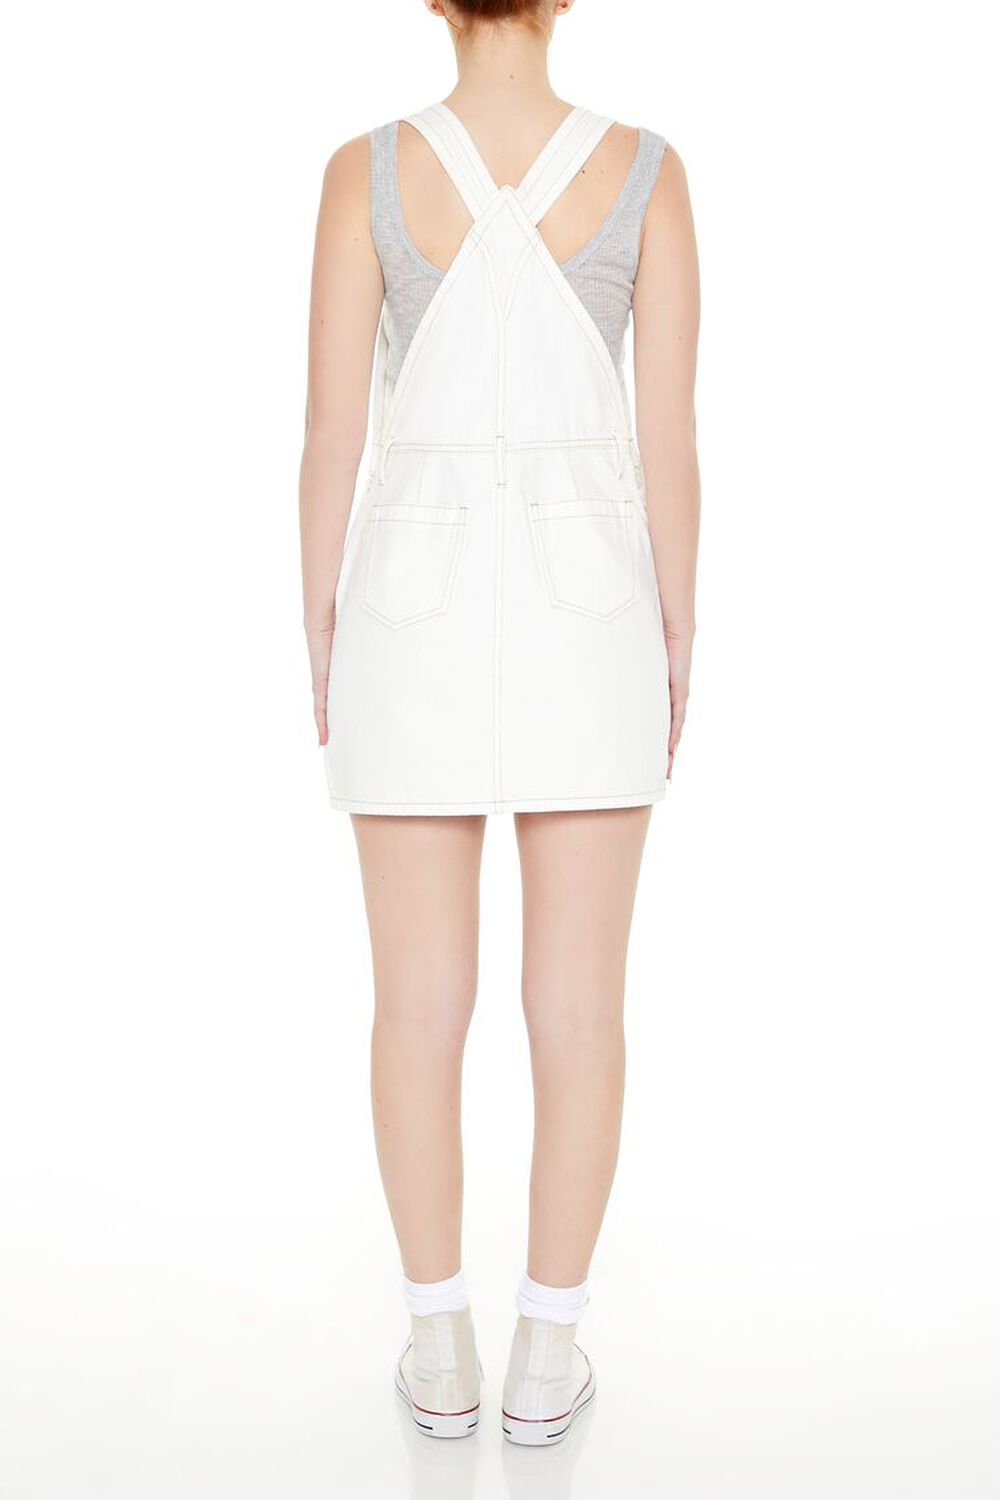 WHITE Denim Overalls Mini Dress, image 3